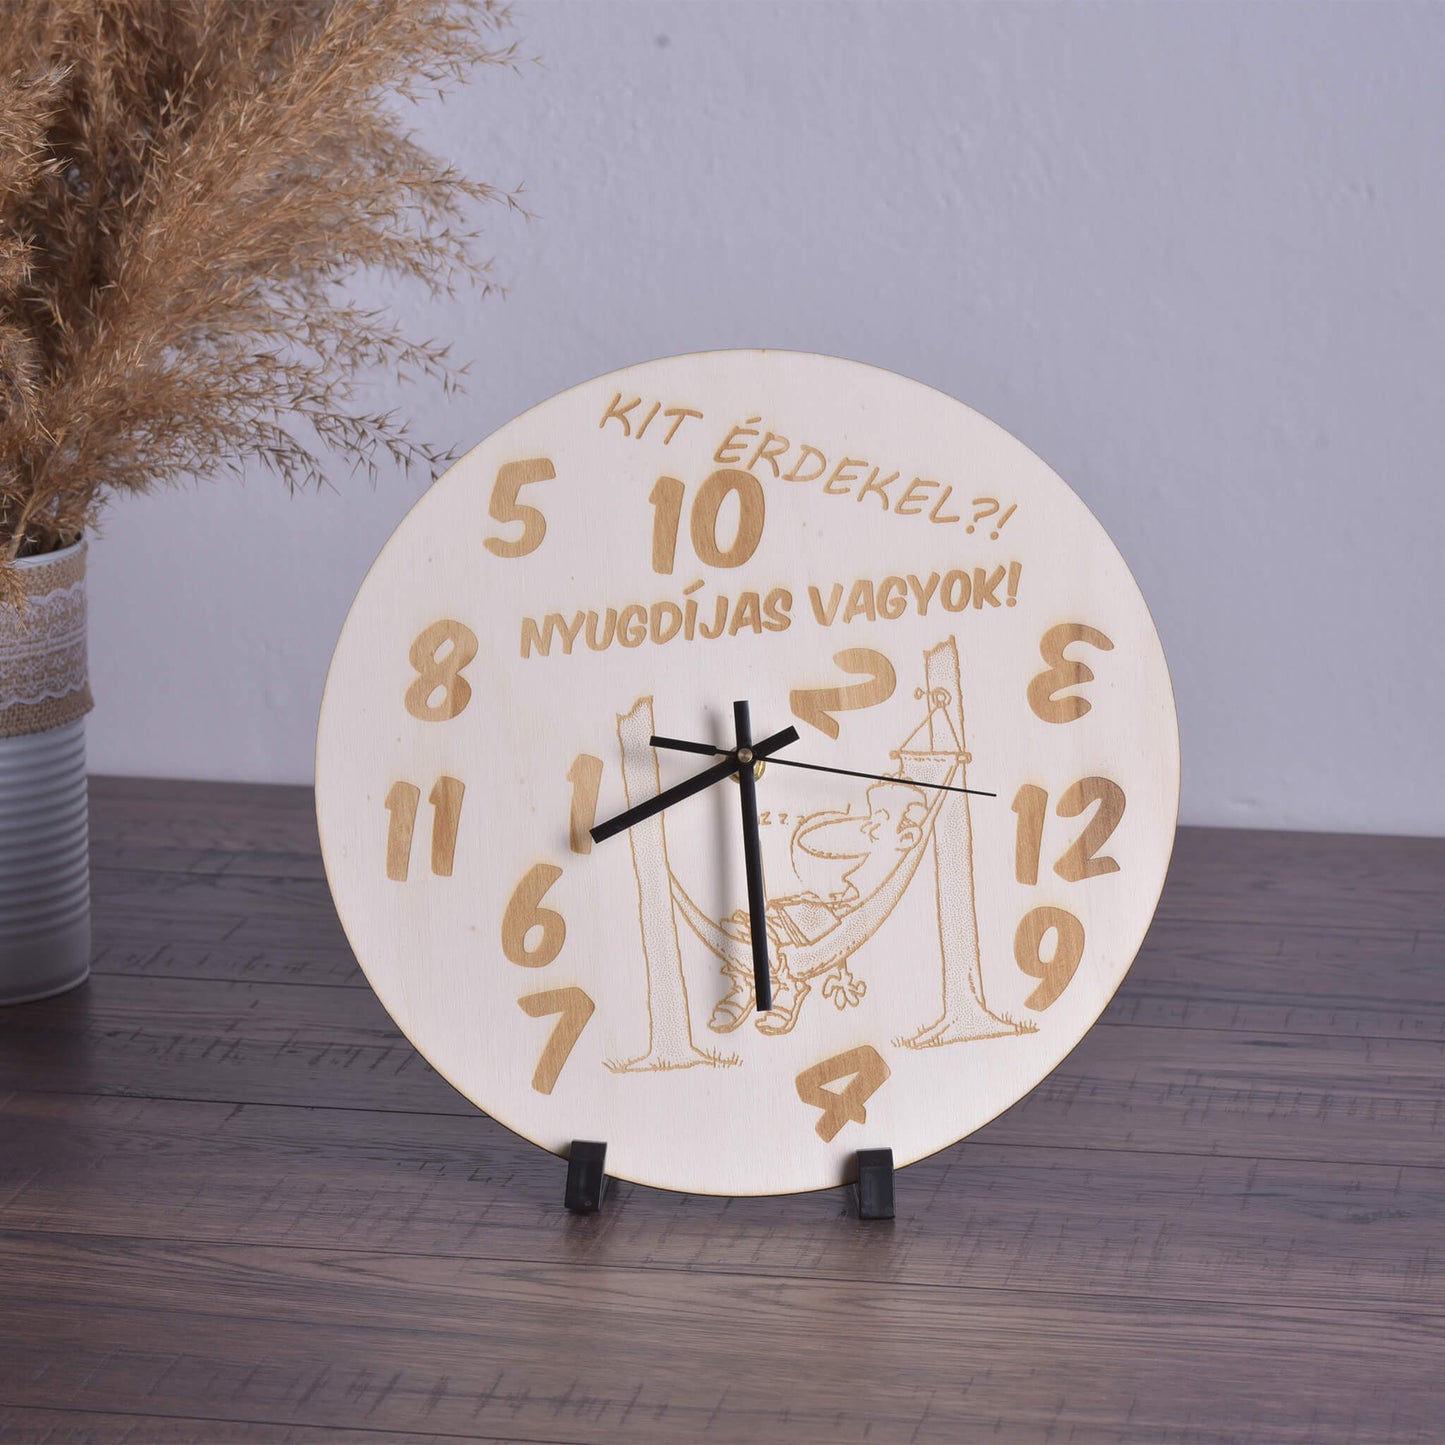 Kit érdekel nyugdíjas vagyok - férfi - wooden engraved wall clock - rvdesignprint